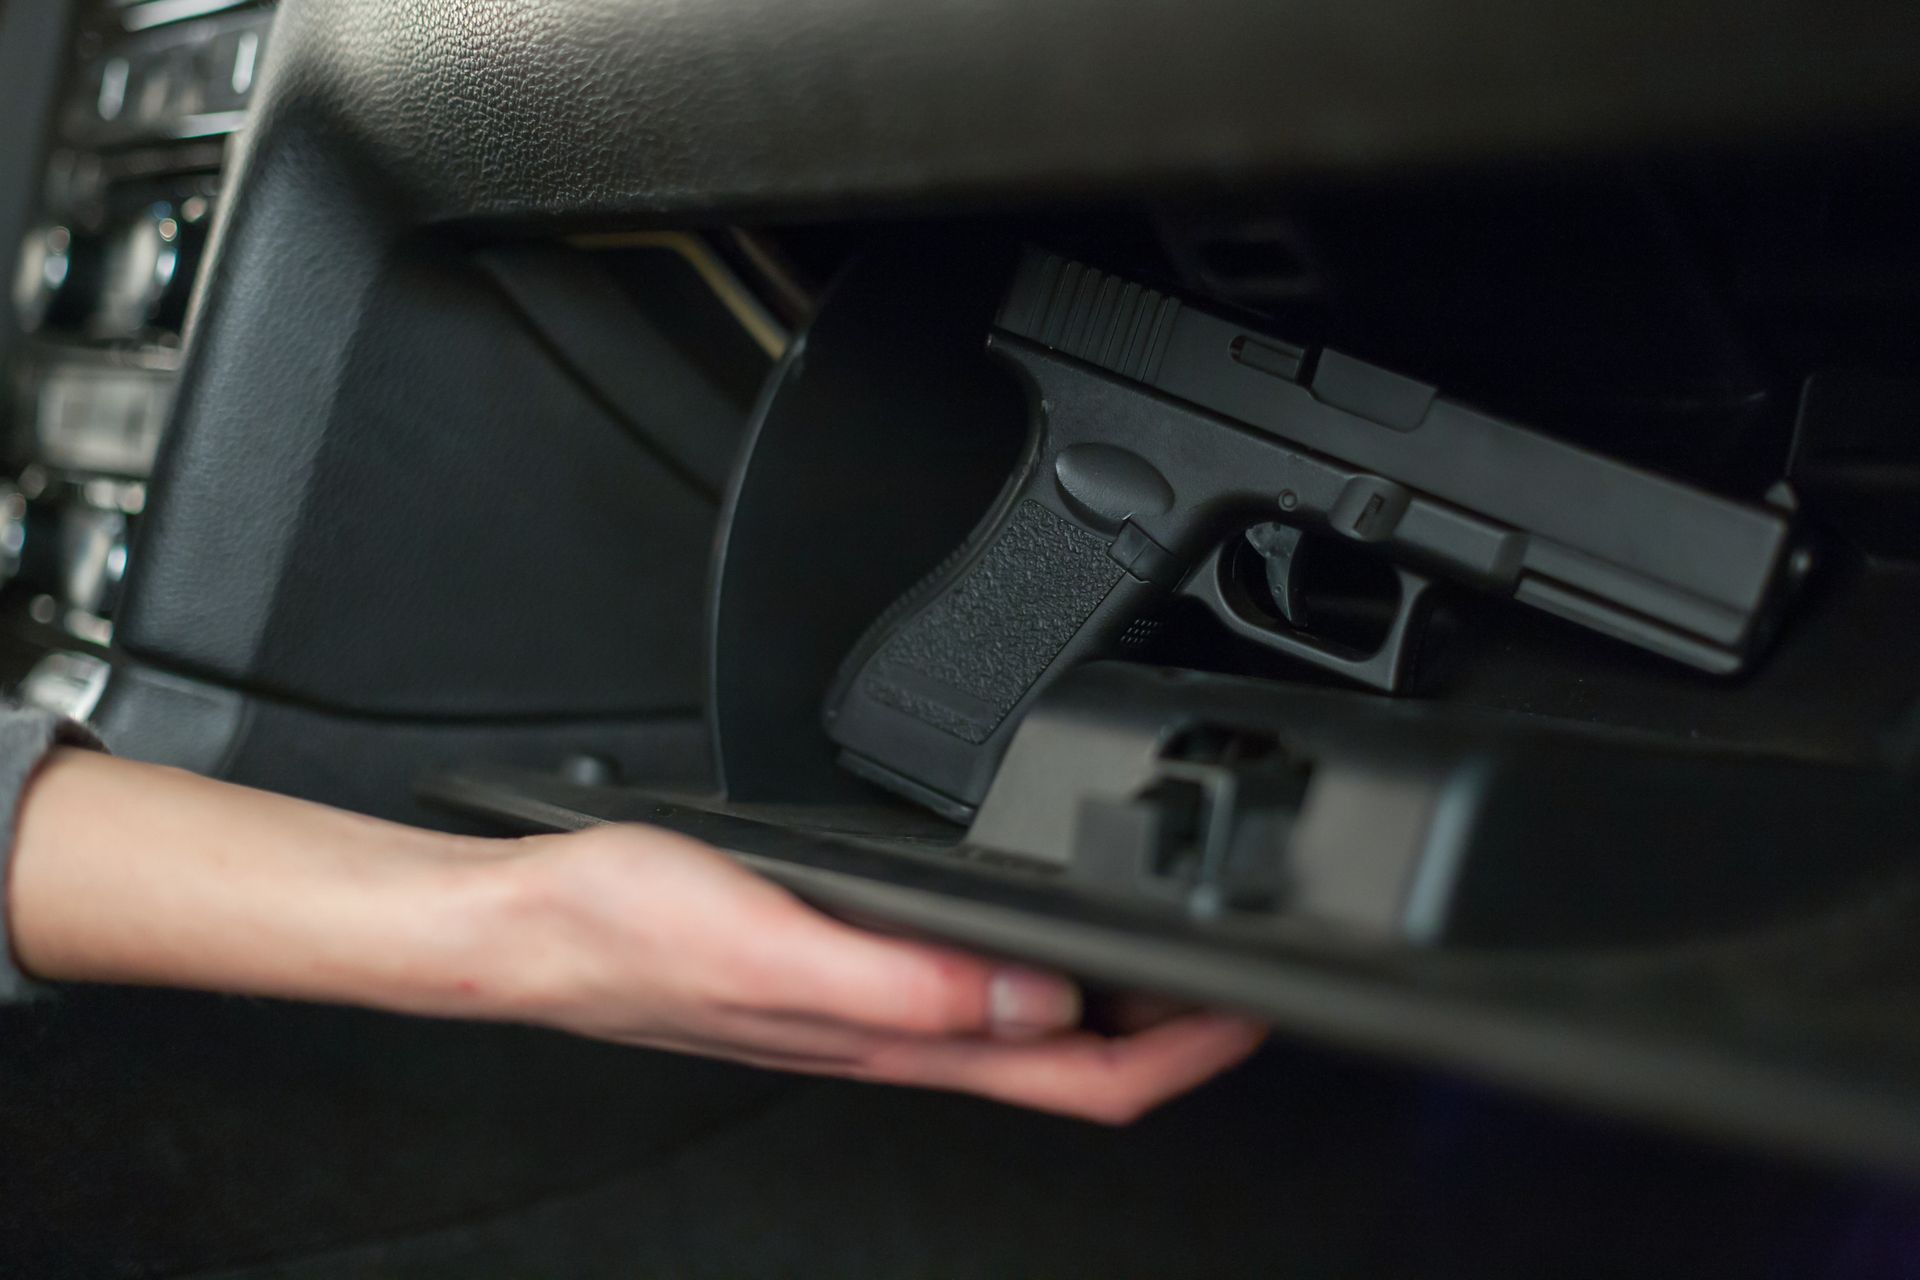 carrying gun in car in Arizona